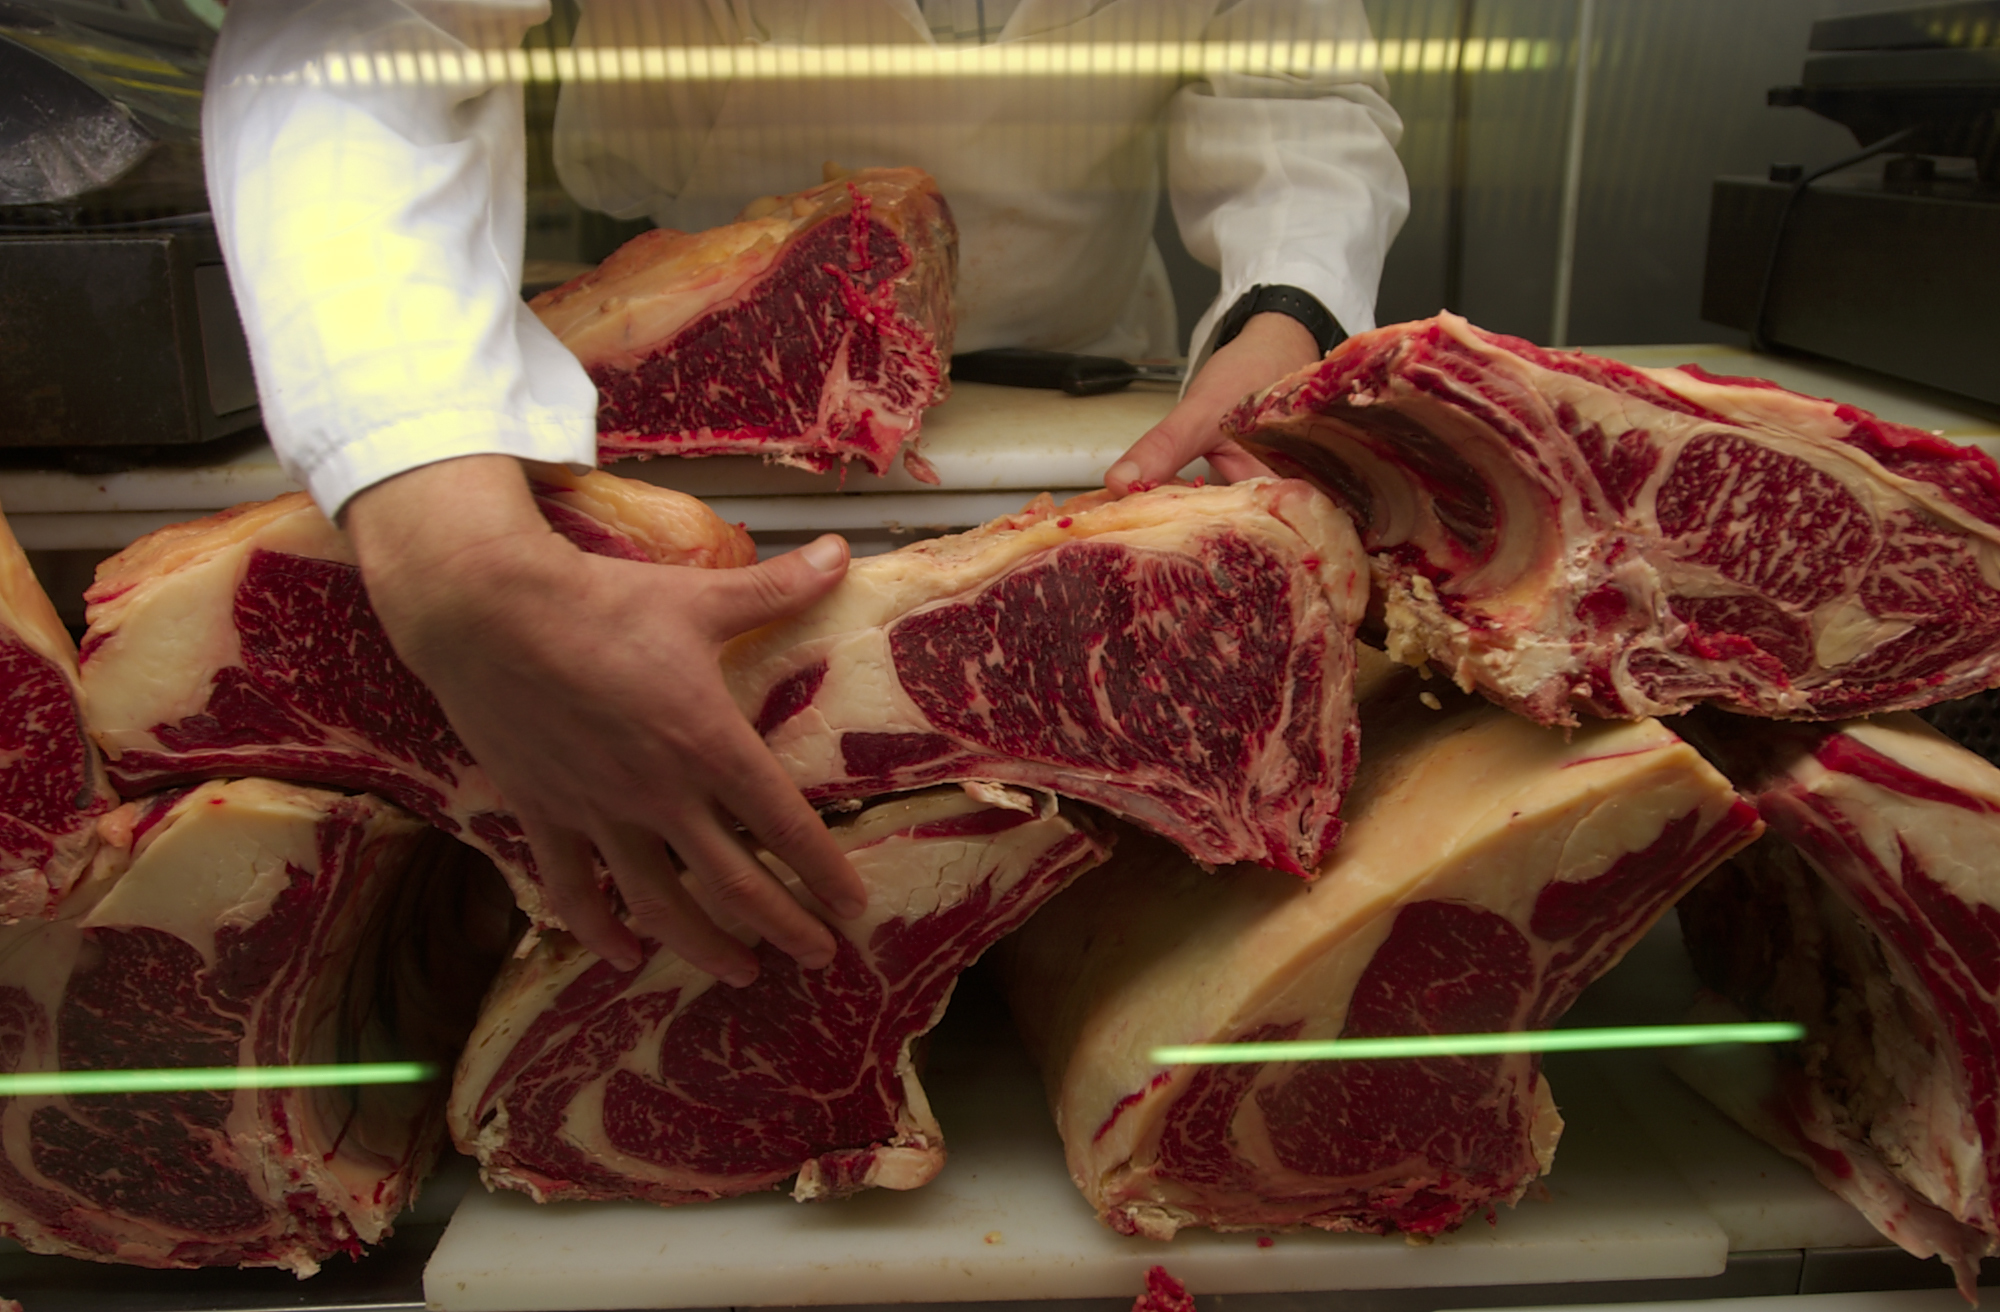 La evidencia es prcticamente nula en el caso de la asociacin entre alto consumo de carne roja no procesada e ictus isqumico.